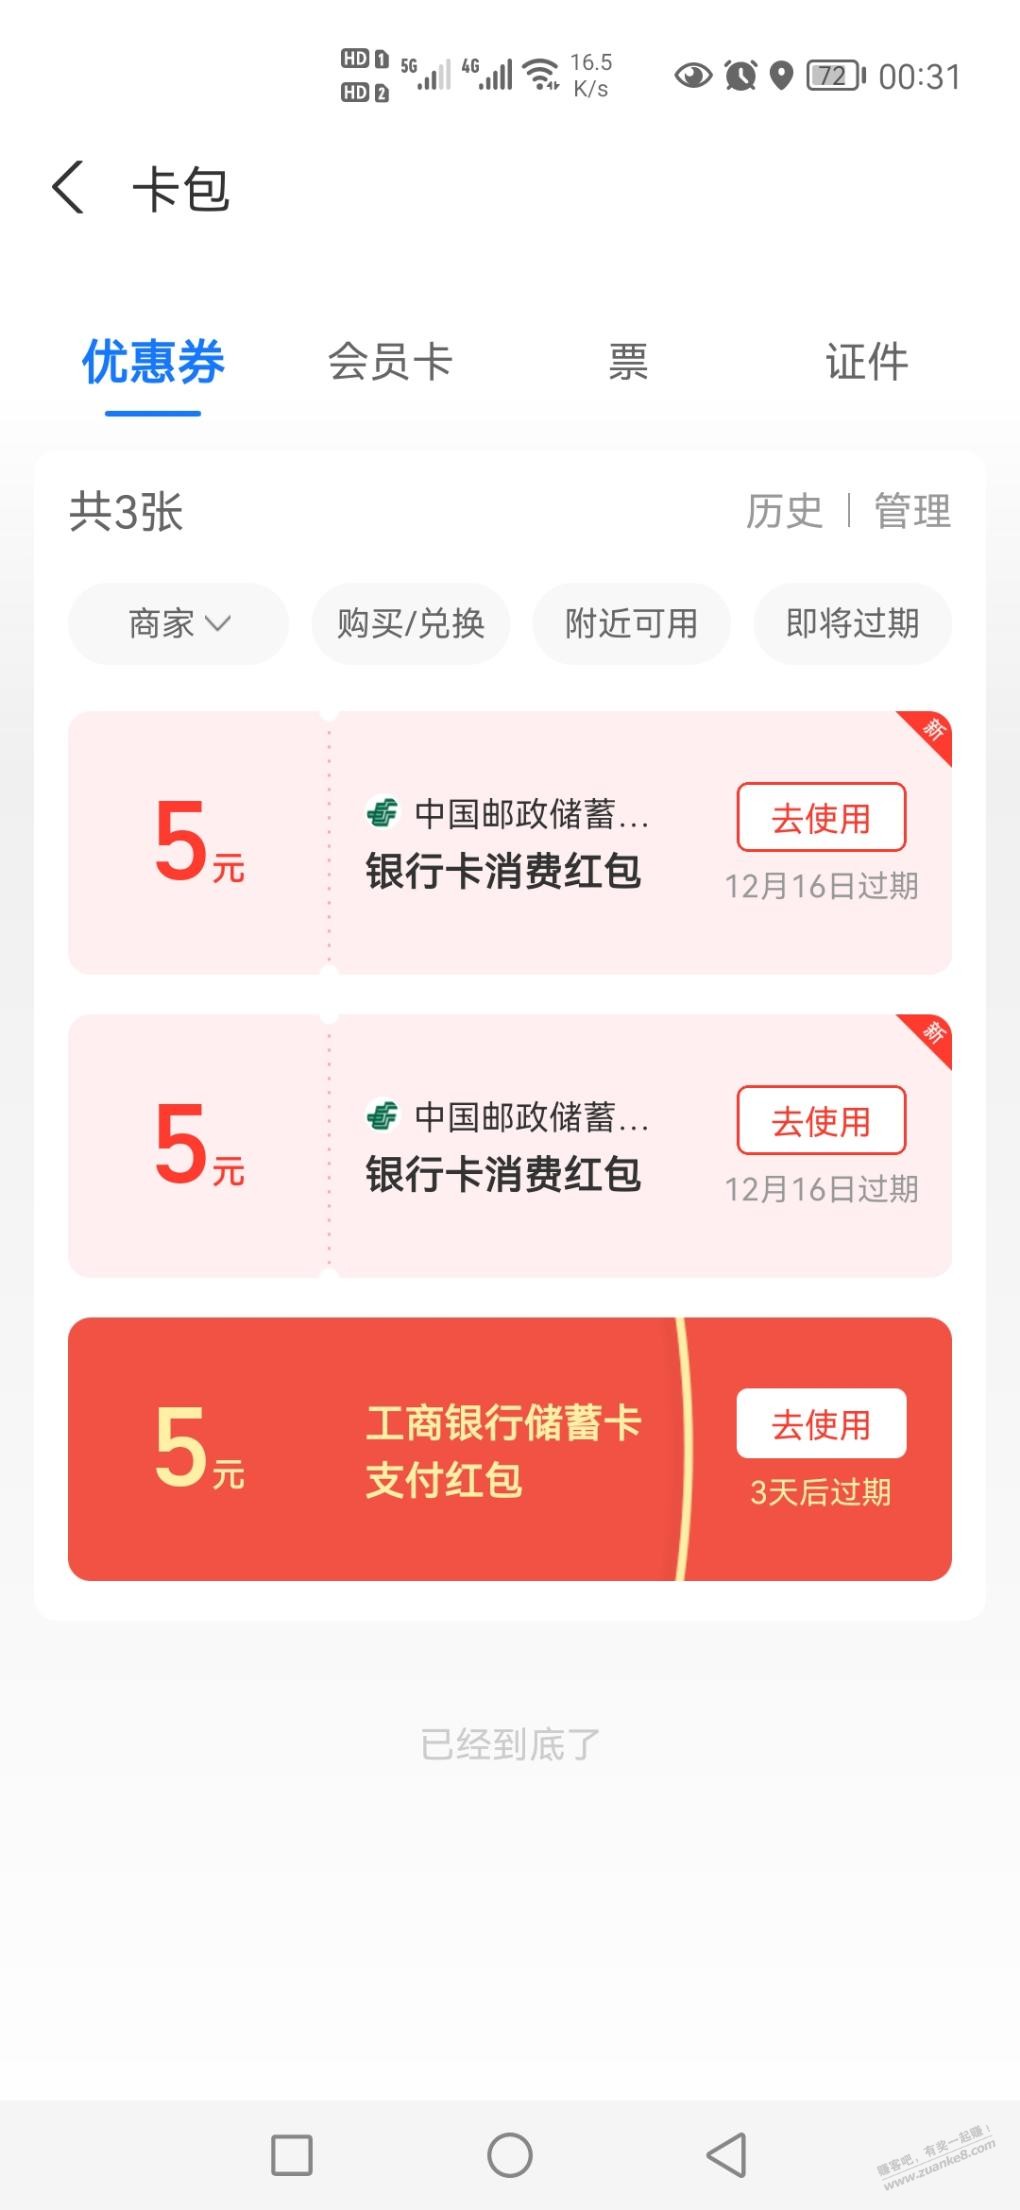 邮储银行15毛-惠小助(52huixz.com)